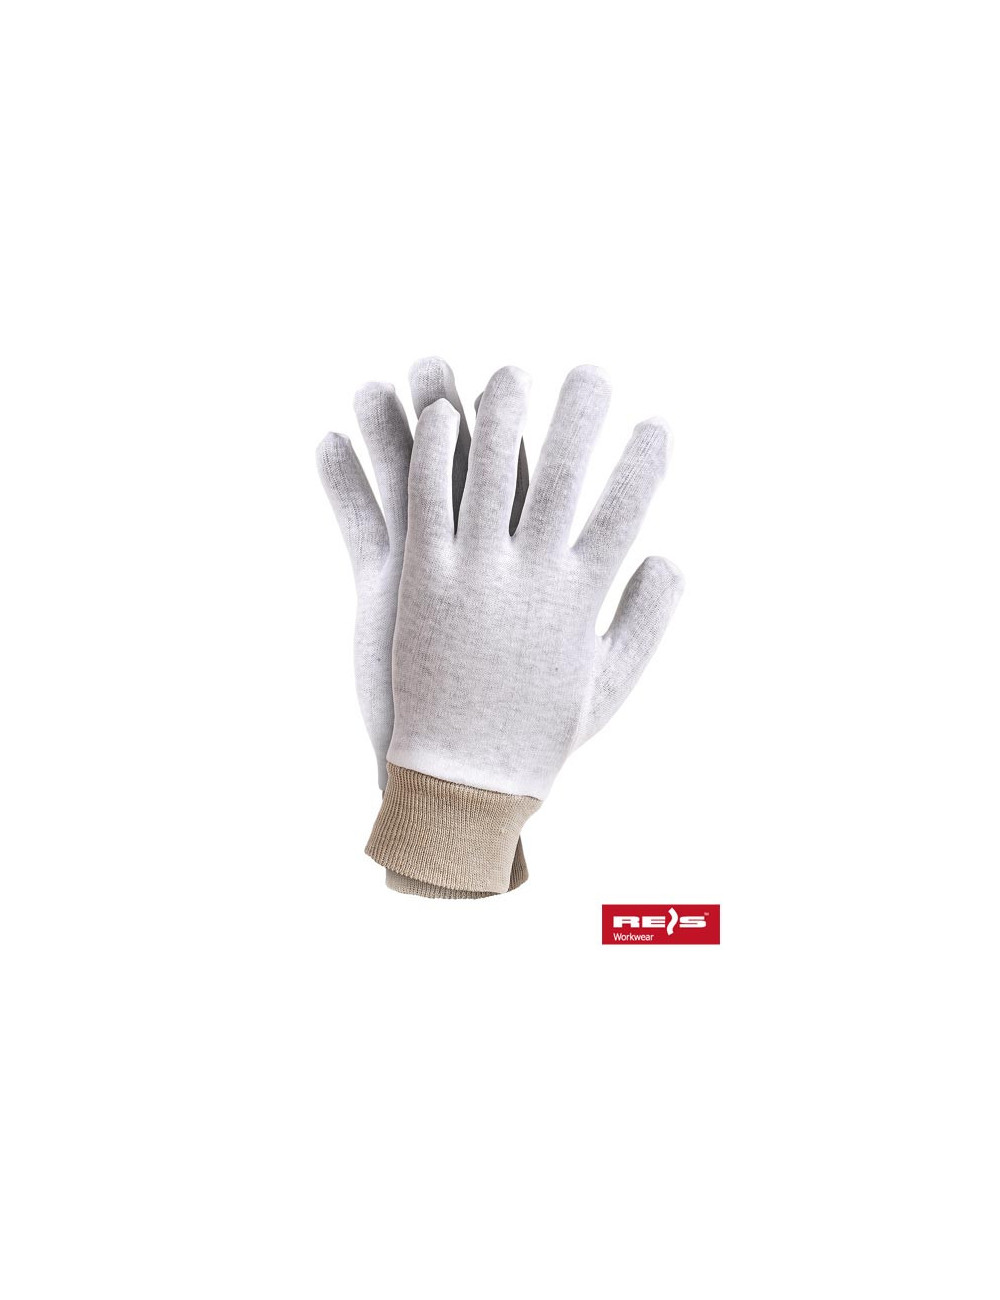 Protective gloves rwksb w white Reis